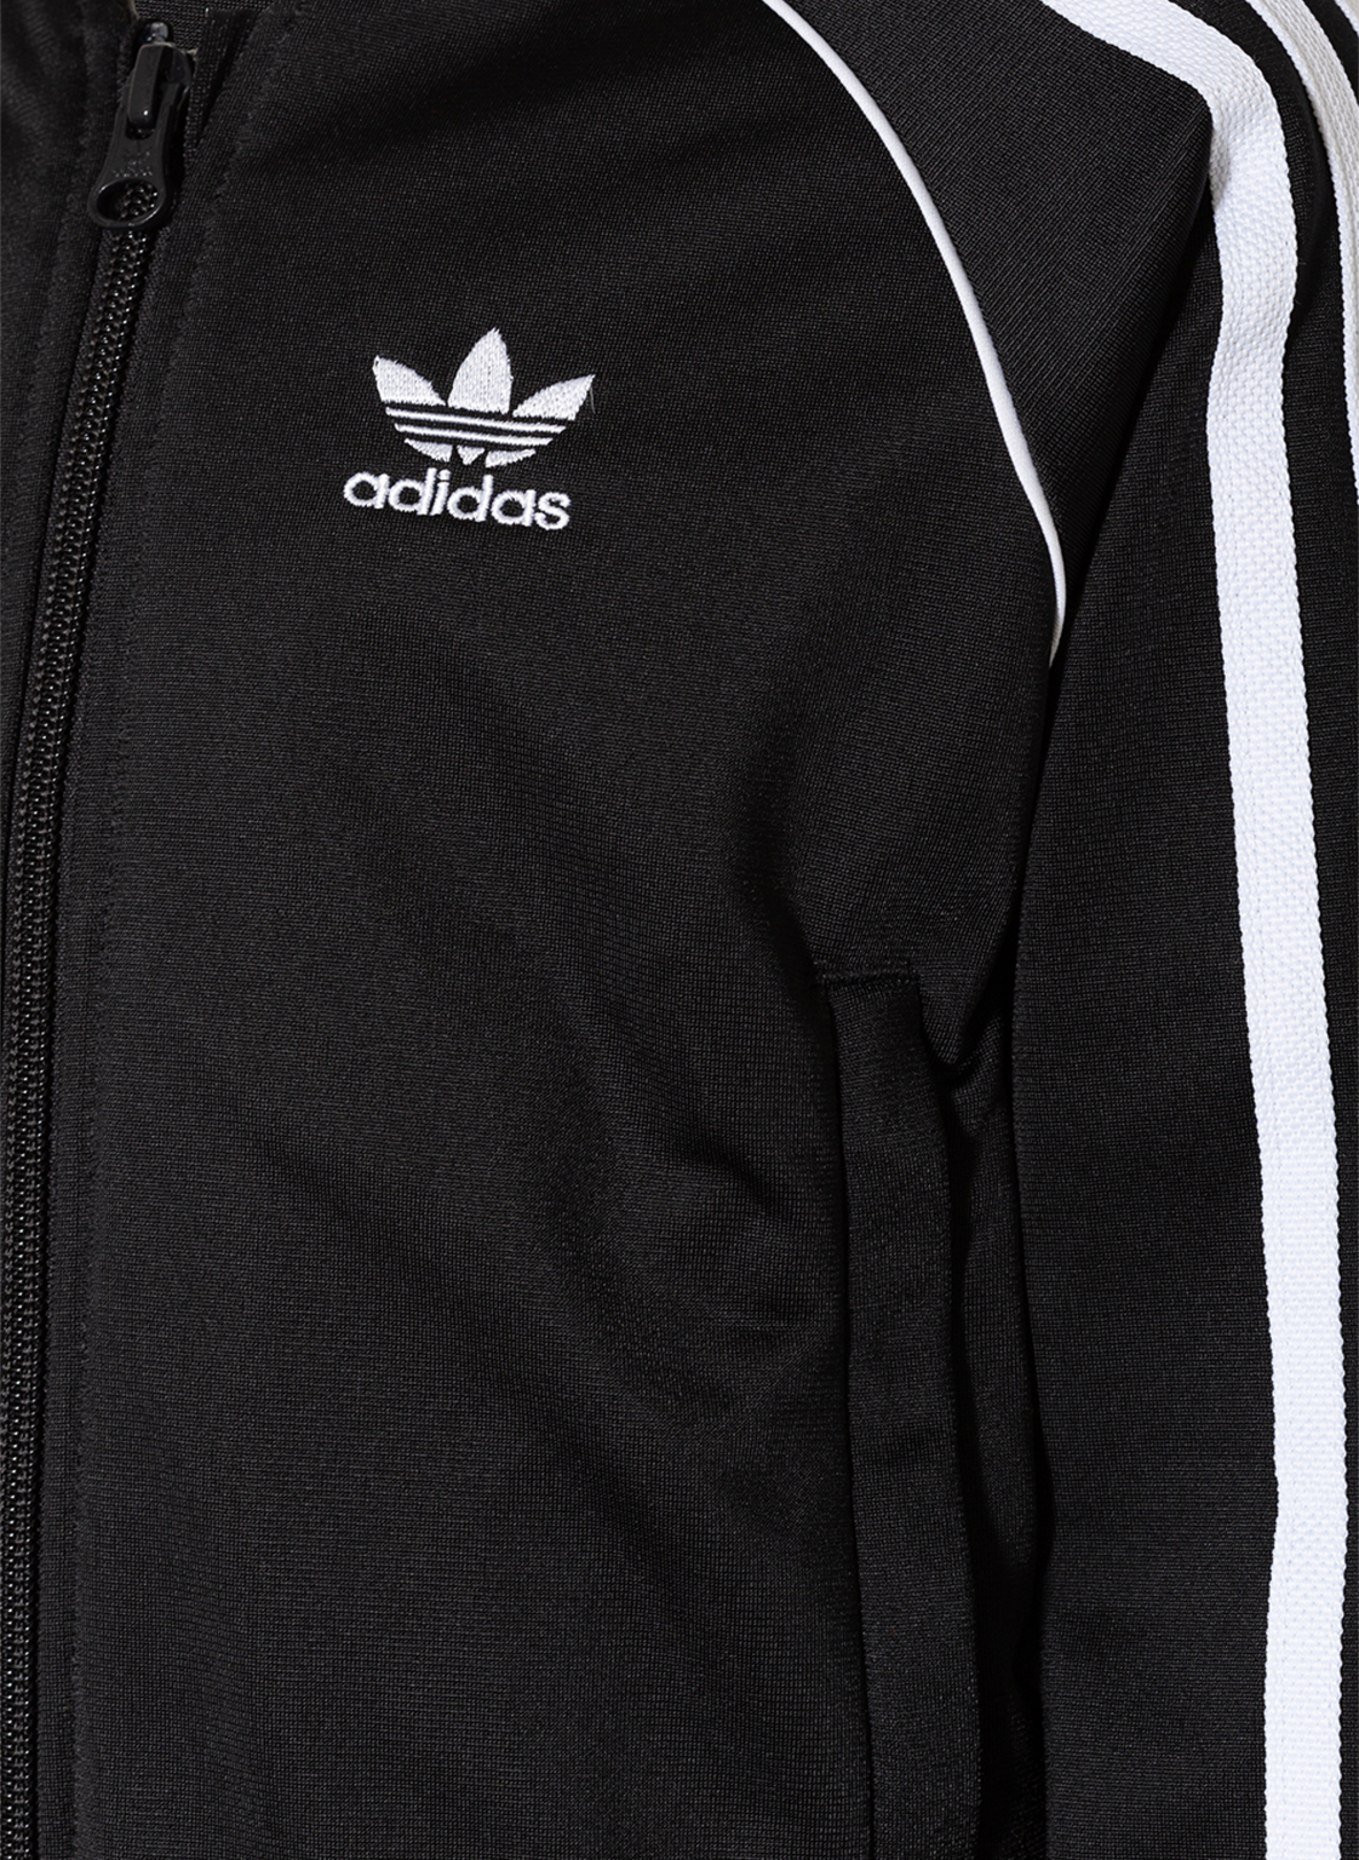 adidas Originals in schwarz/ Galonstreifen Trainingsanzug weiss mit